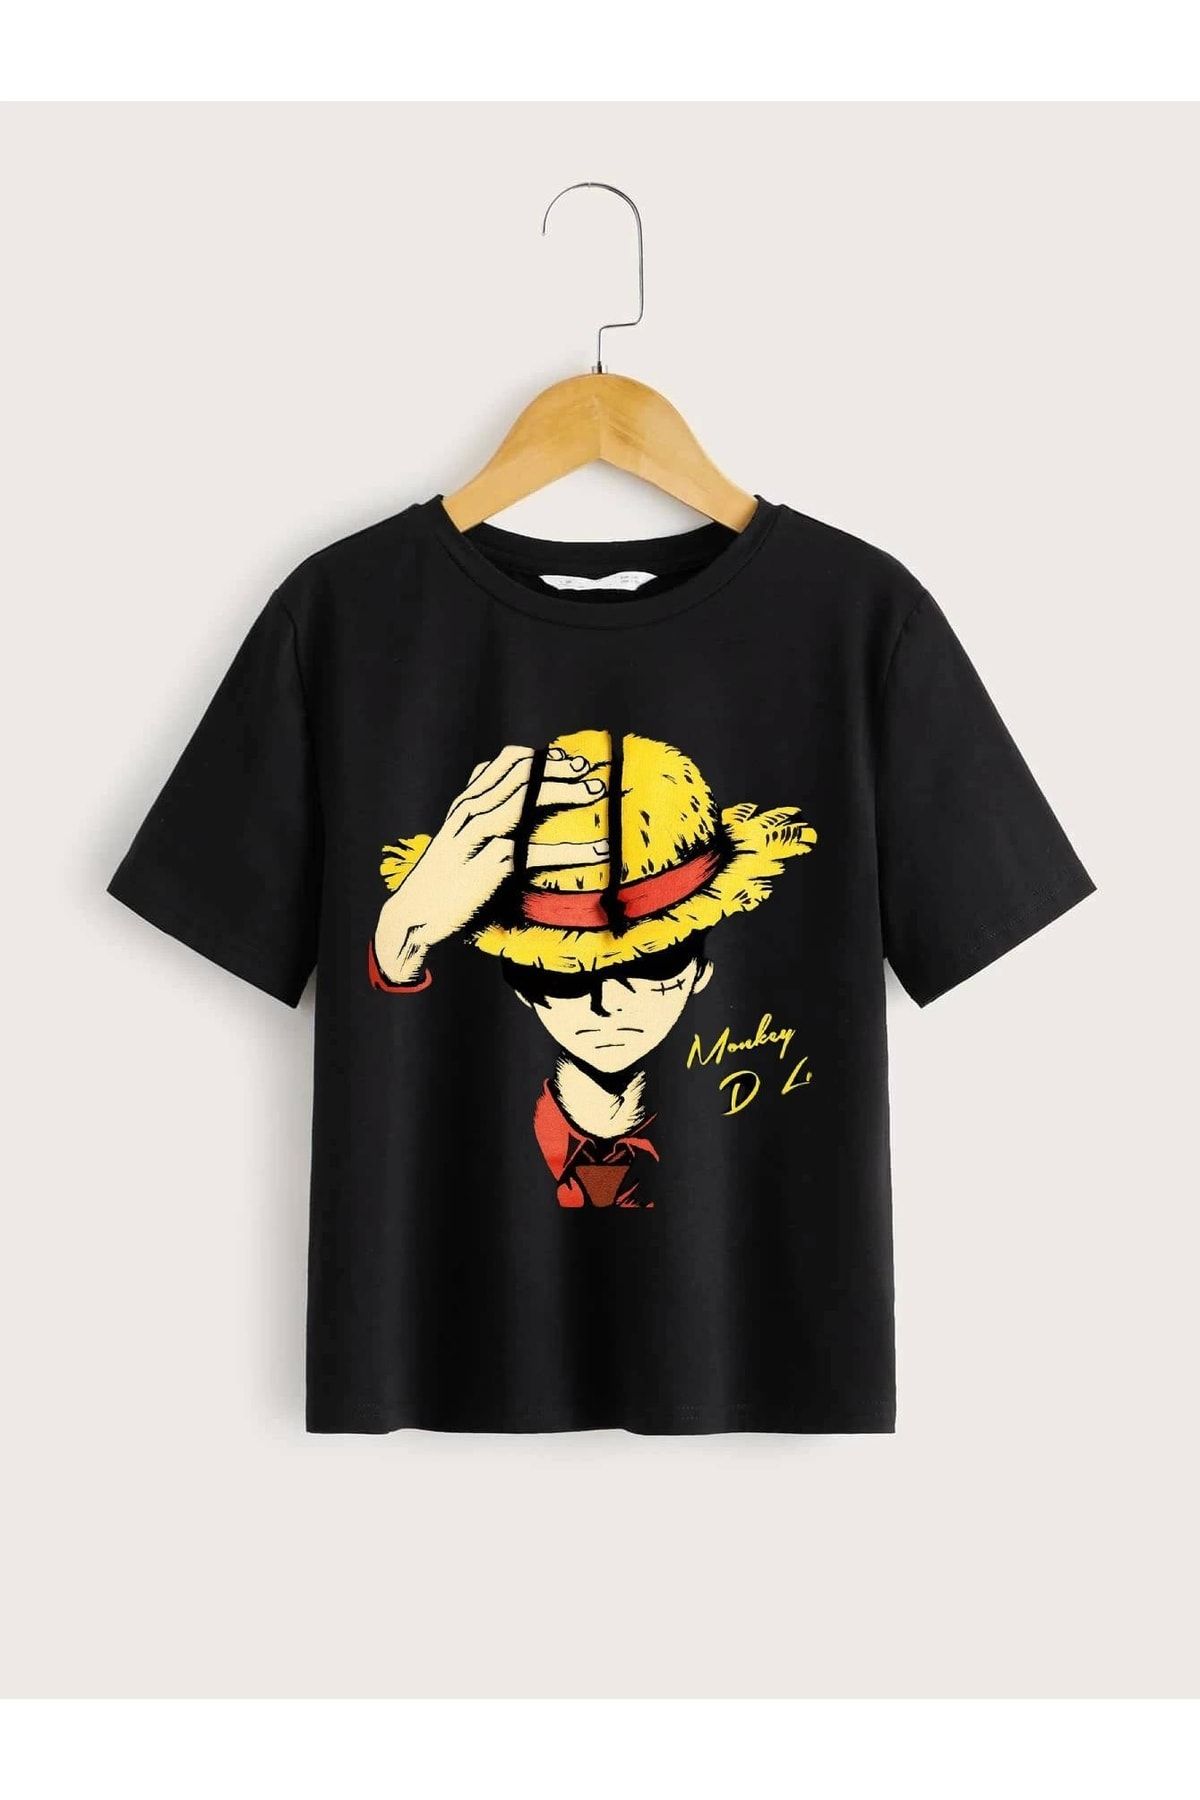 LePold One Piece Monkey D.luffy Baskılı Çocuk Tişört